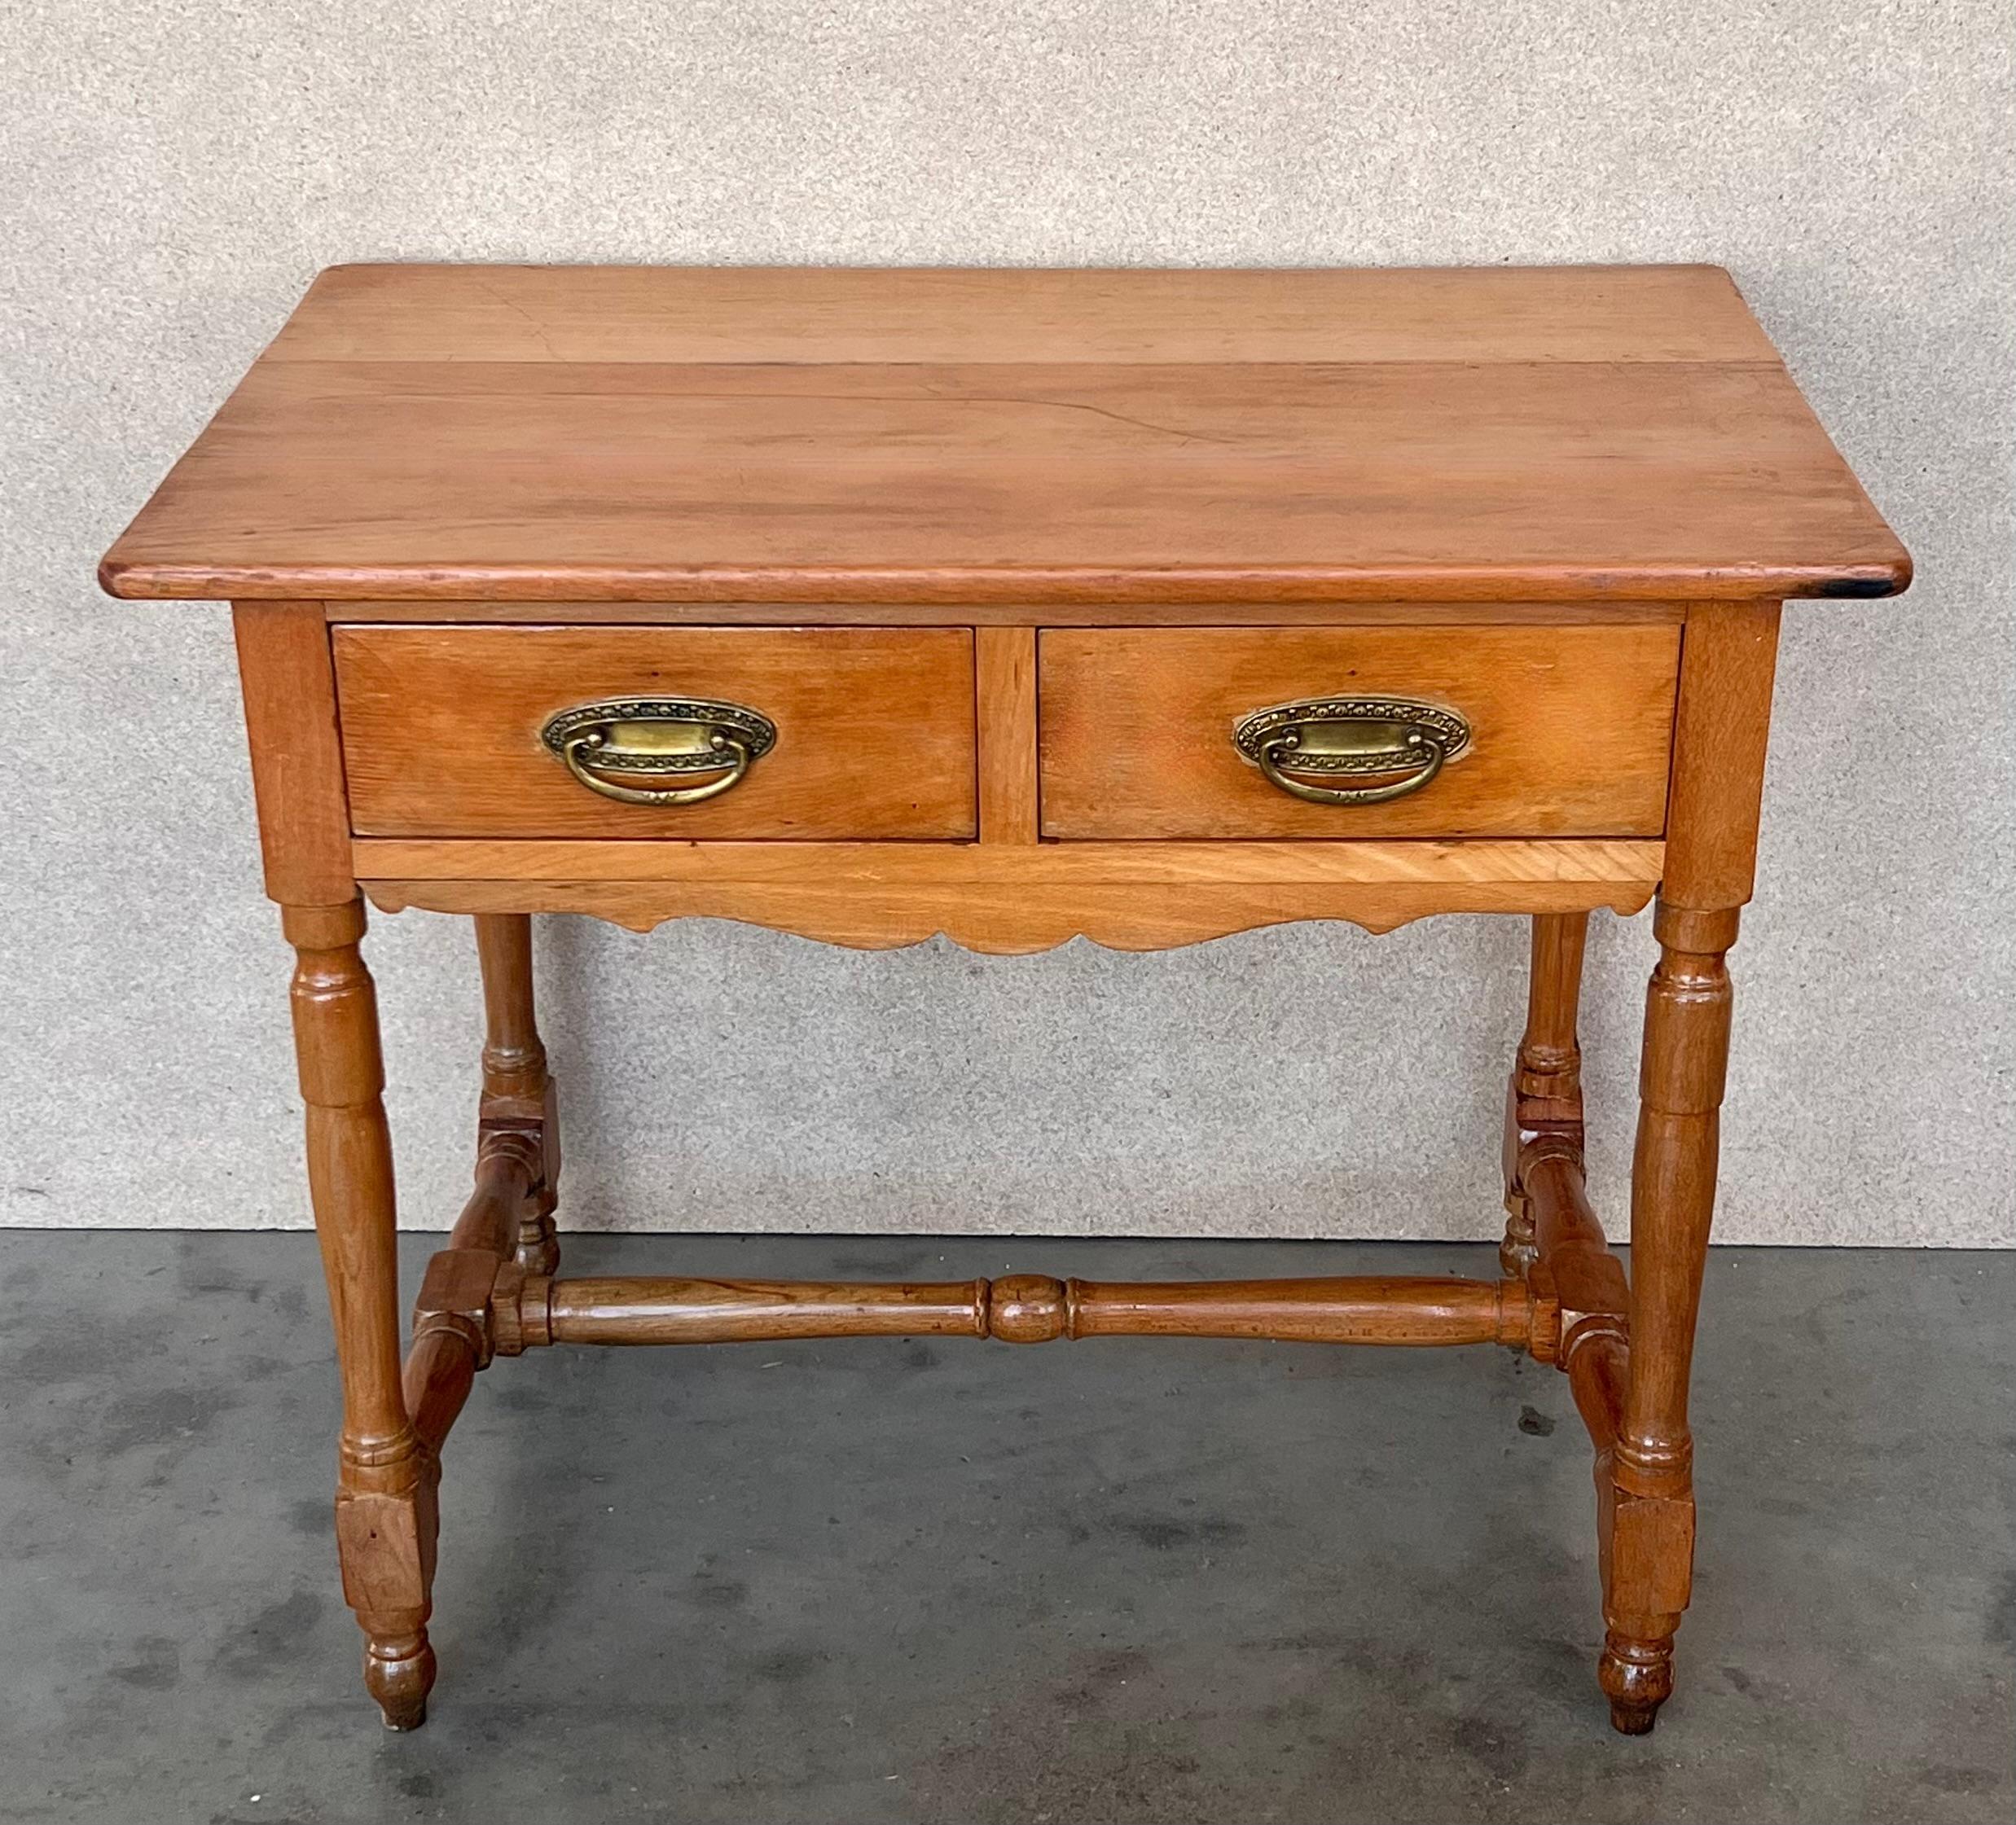 Ein charmanter Bauernhoftisch aus spanischer Kiefer aus dem frühen 20. Jahrhundert mit vier verjüngten Beinen und einer wunderbar abgenutzten Oberfläche aus einem Jahrhundert der Nutzung. Der Tisch eignet sich gut als Esstisch, kann aber auch als